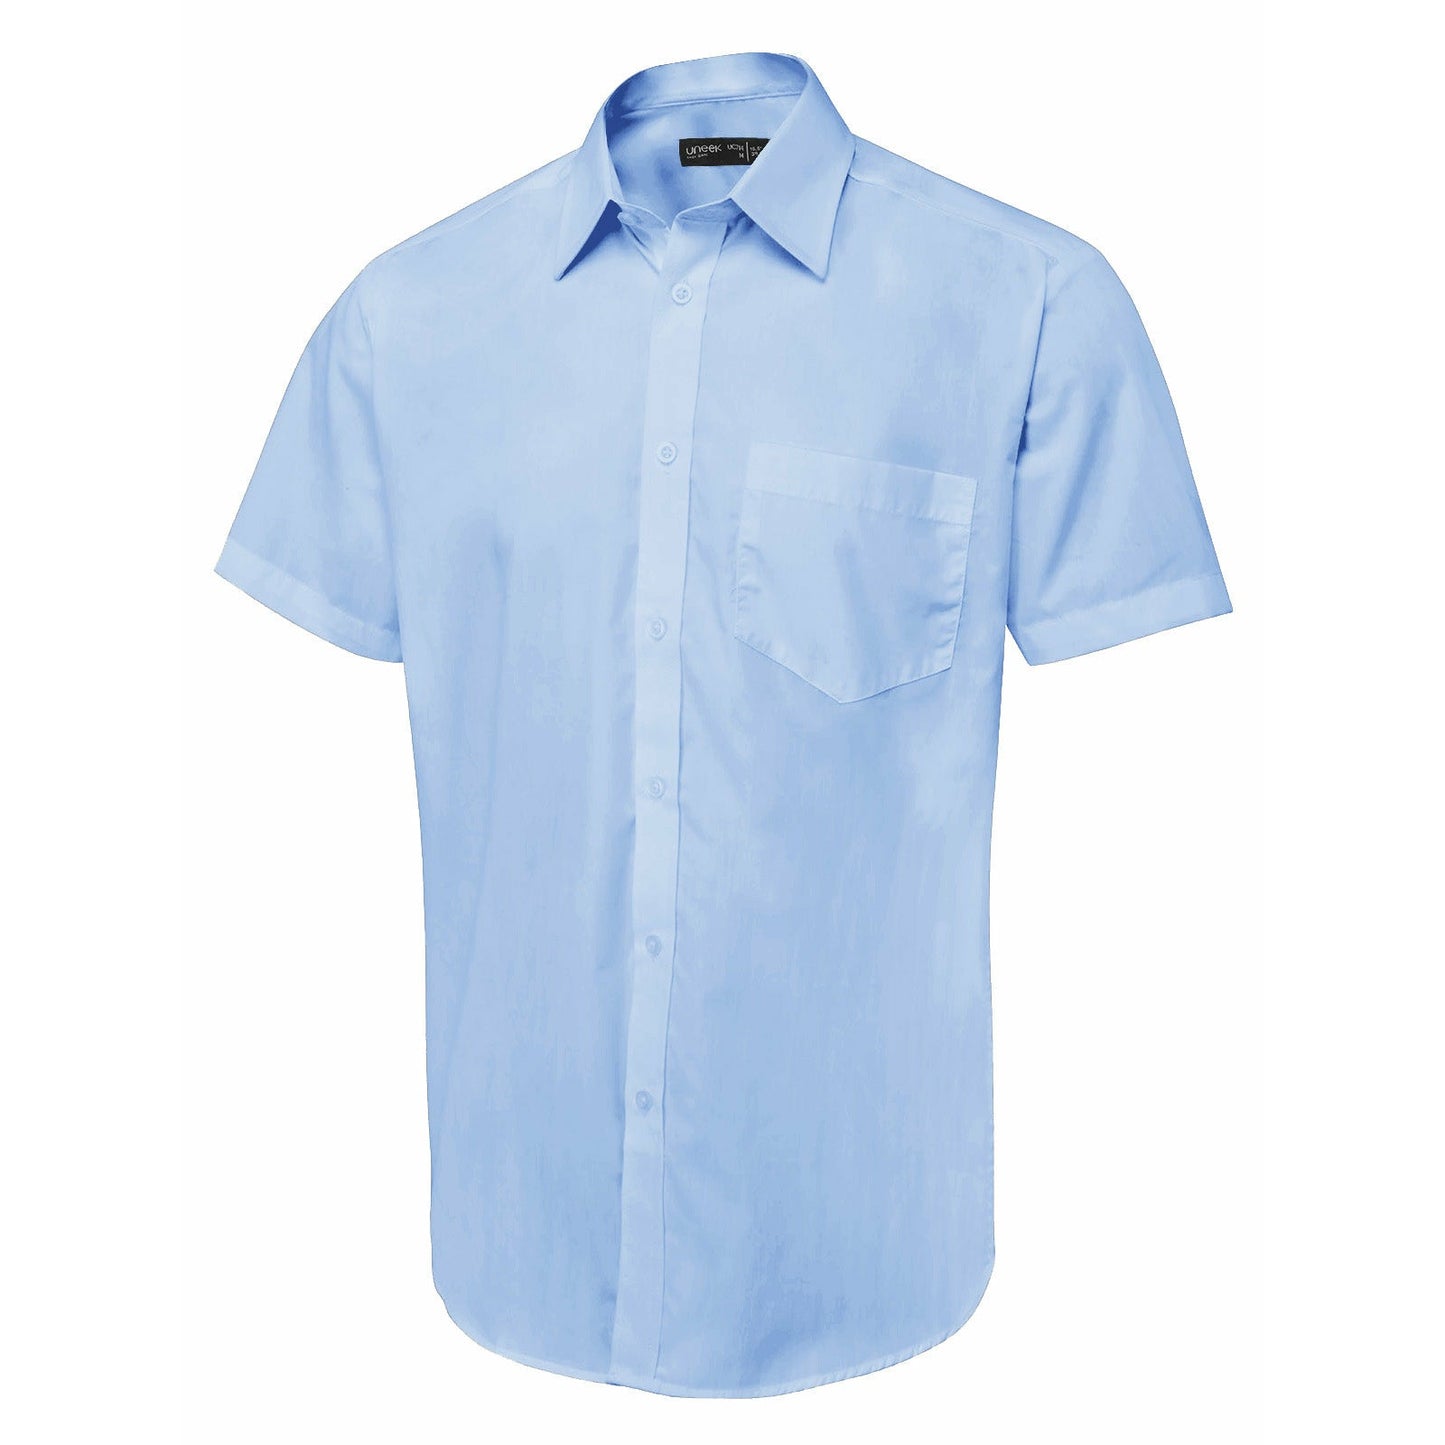 Men's Short Sleeve Poplin Shirt - Light Blue